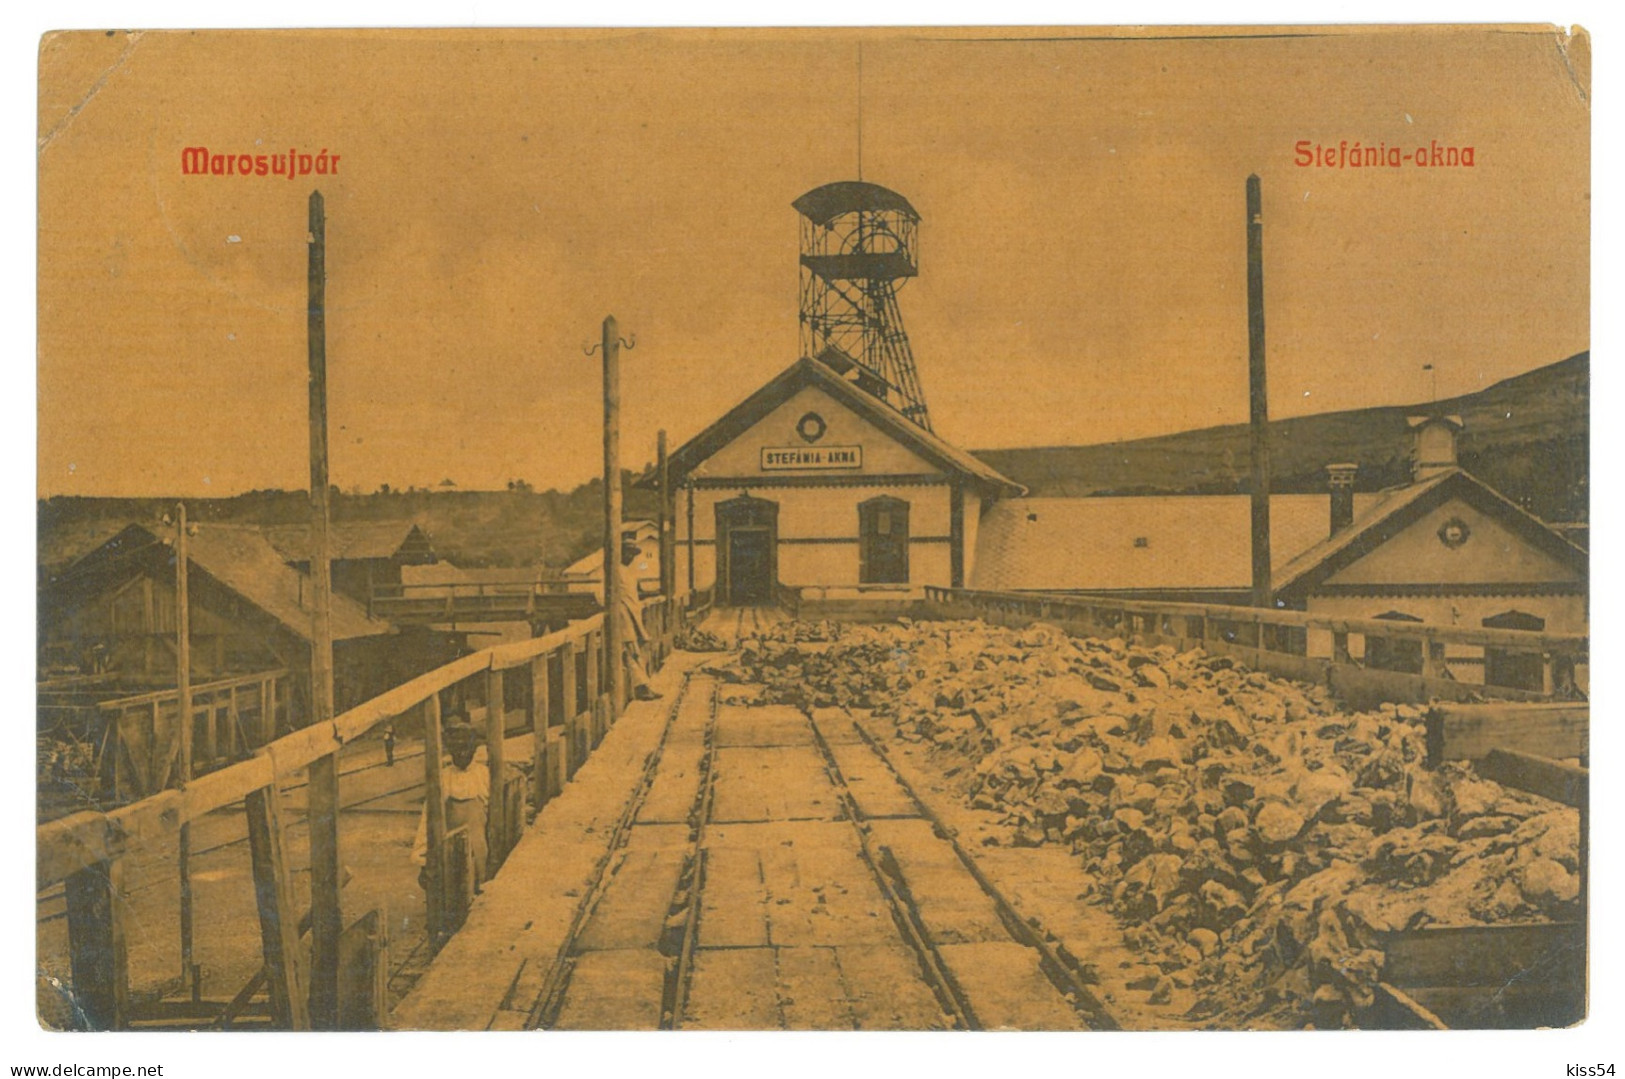 RO 81 - 25042 OCNA MURES, Alba, SALT Mine, Romania - Old Postcard - Used - 1910 - Rumania